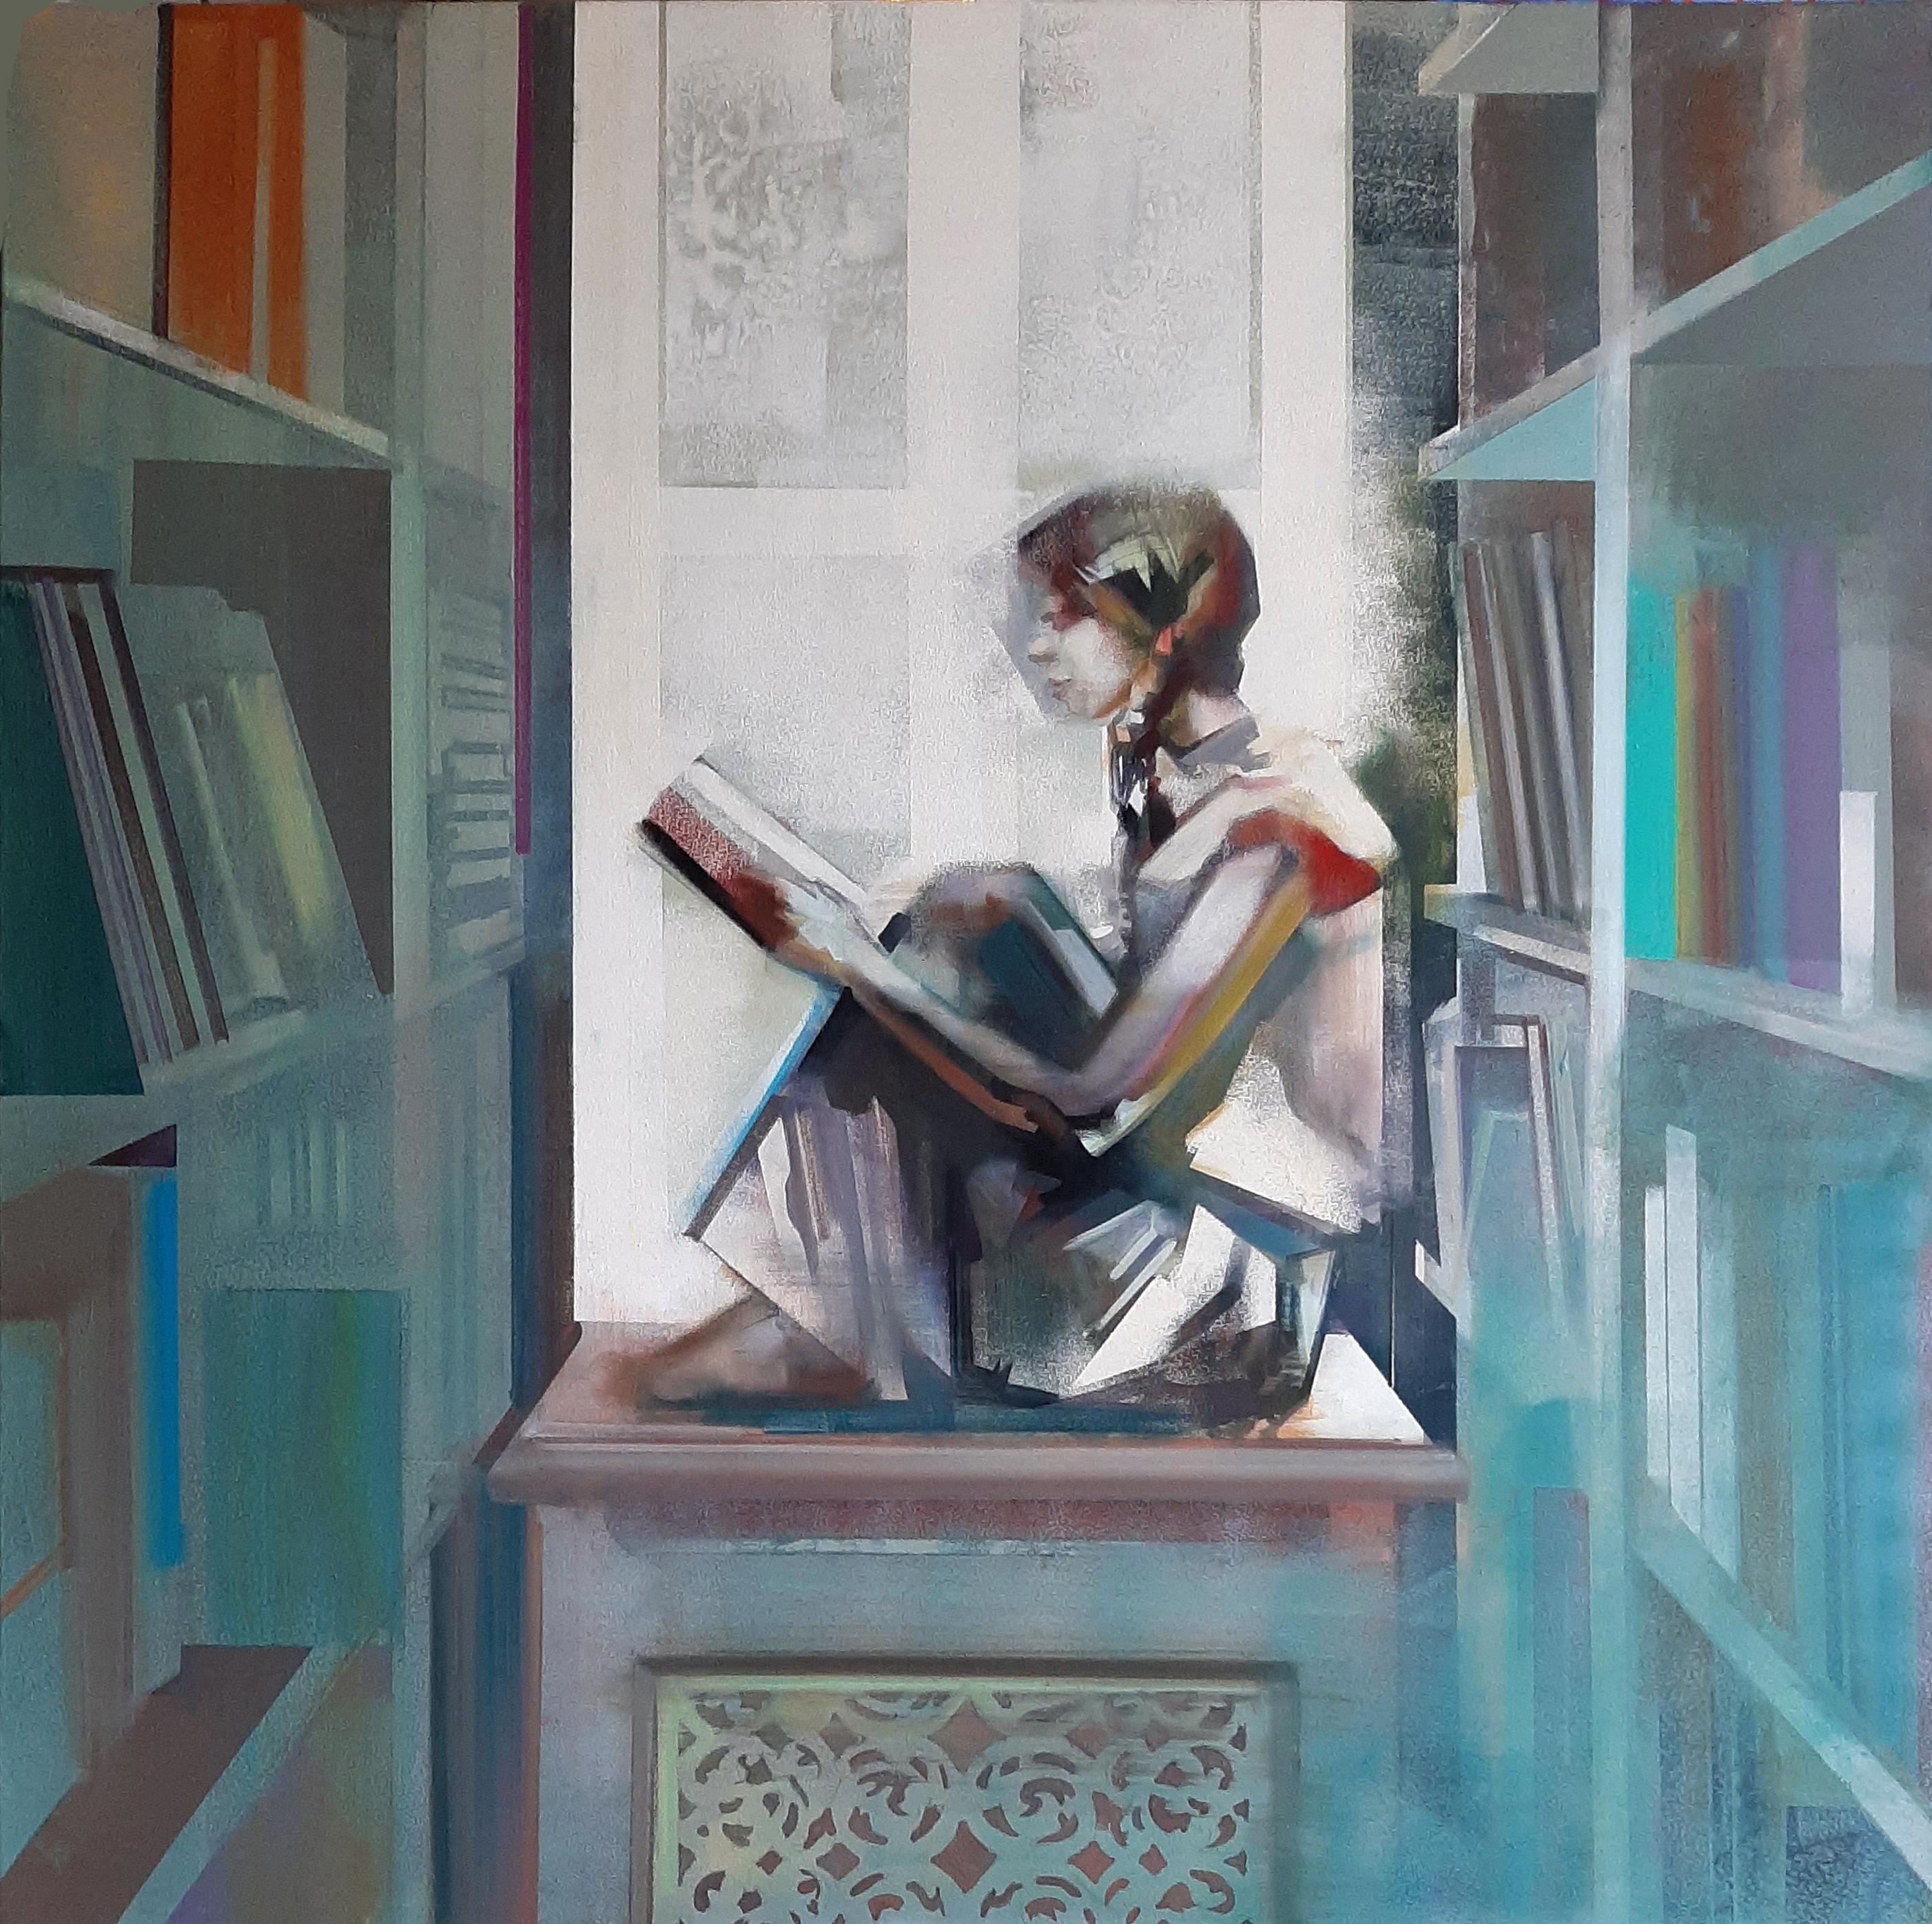 Lesendes Mädchen - 21. Jahrhundert, abstraktes Bild eines lesenden Mädchens in einer Bibliothek